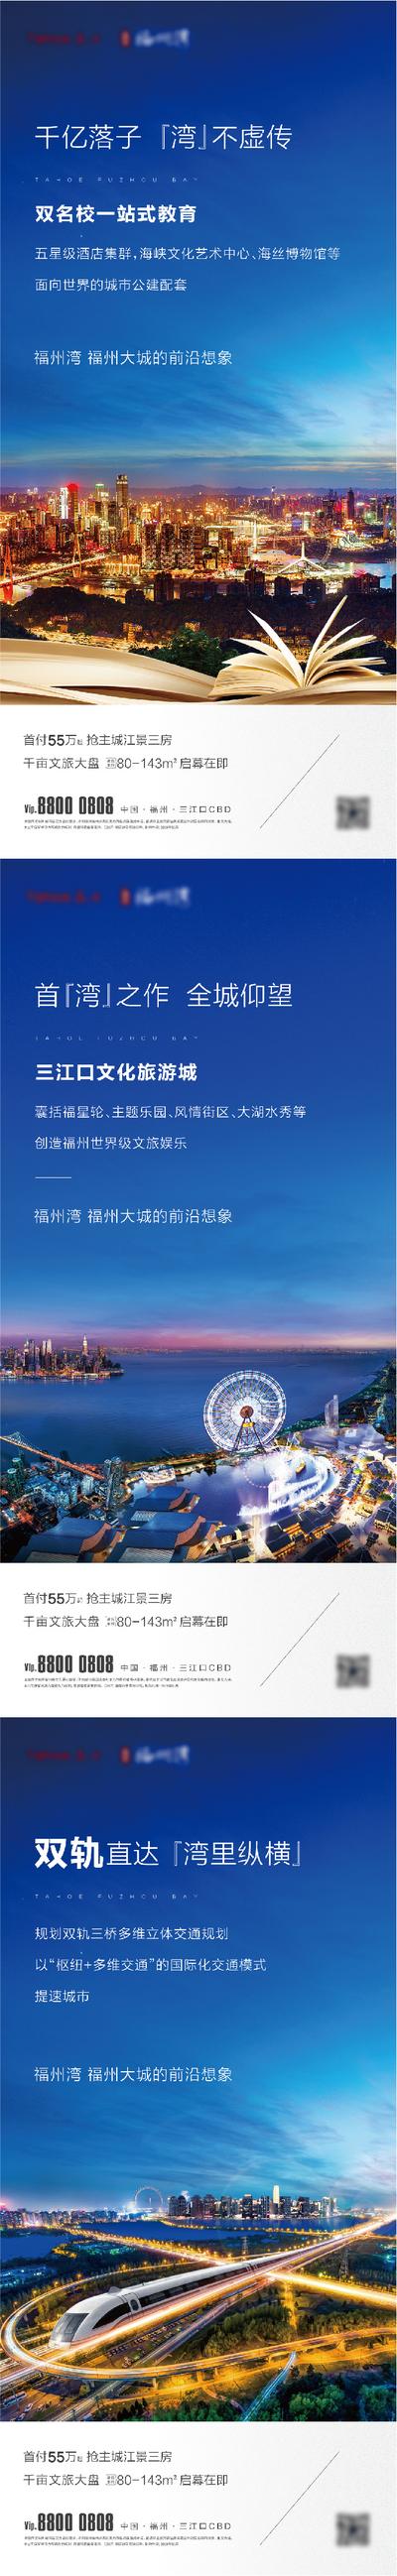 南门网 广告 海报 地产 湖景 价值点 文旅 文化 旅游 系列